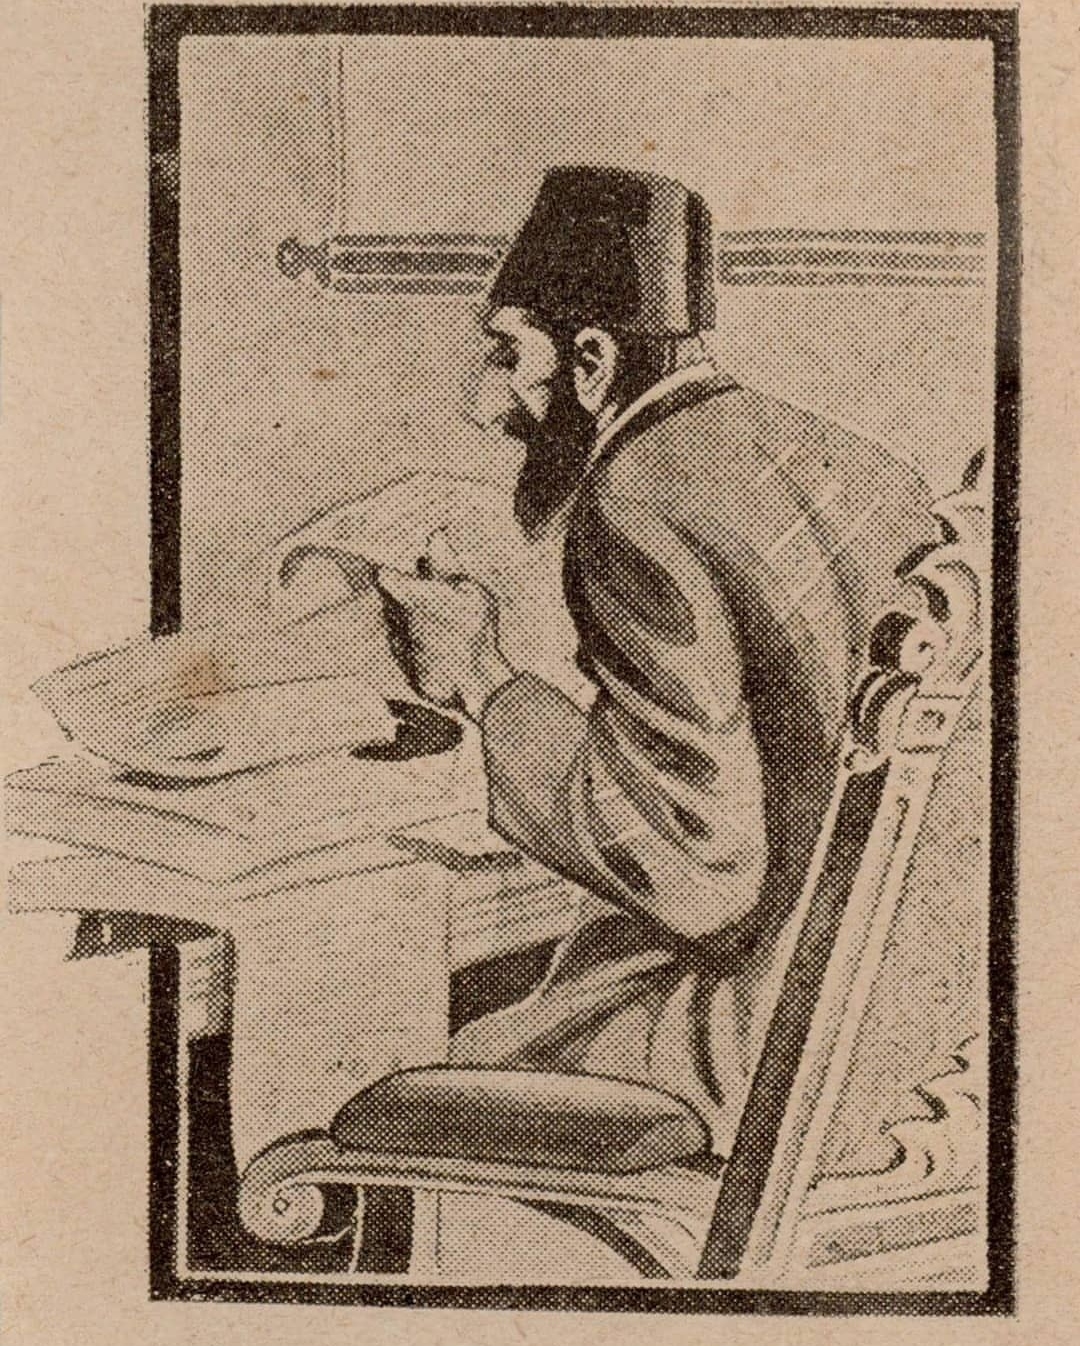 Sultan Abdülhamidi gazete okurken gösteren bir karikatür